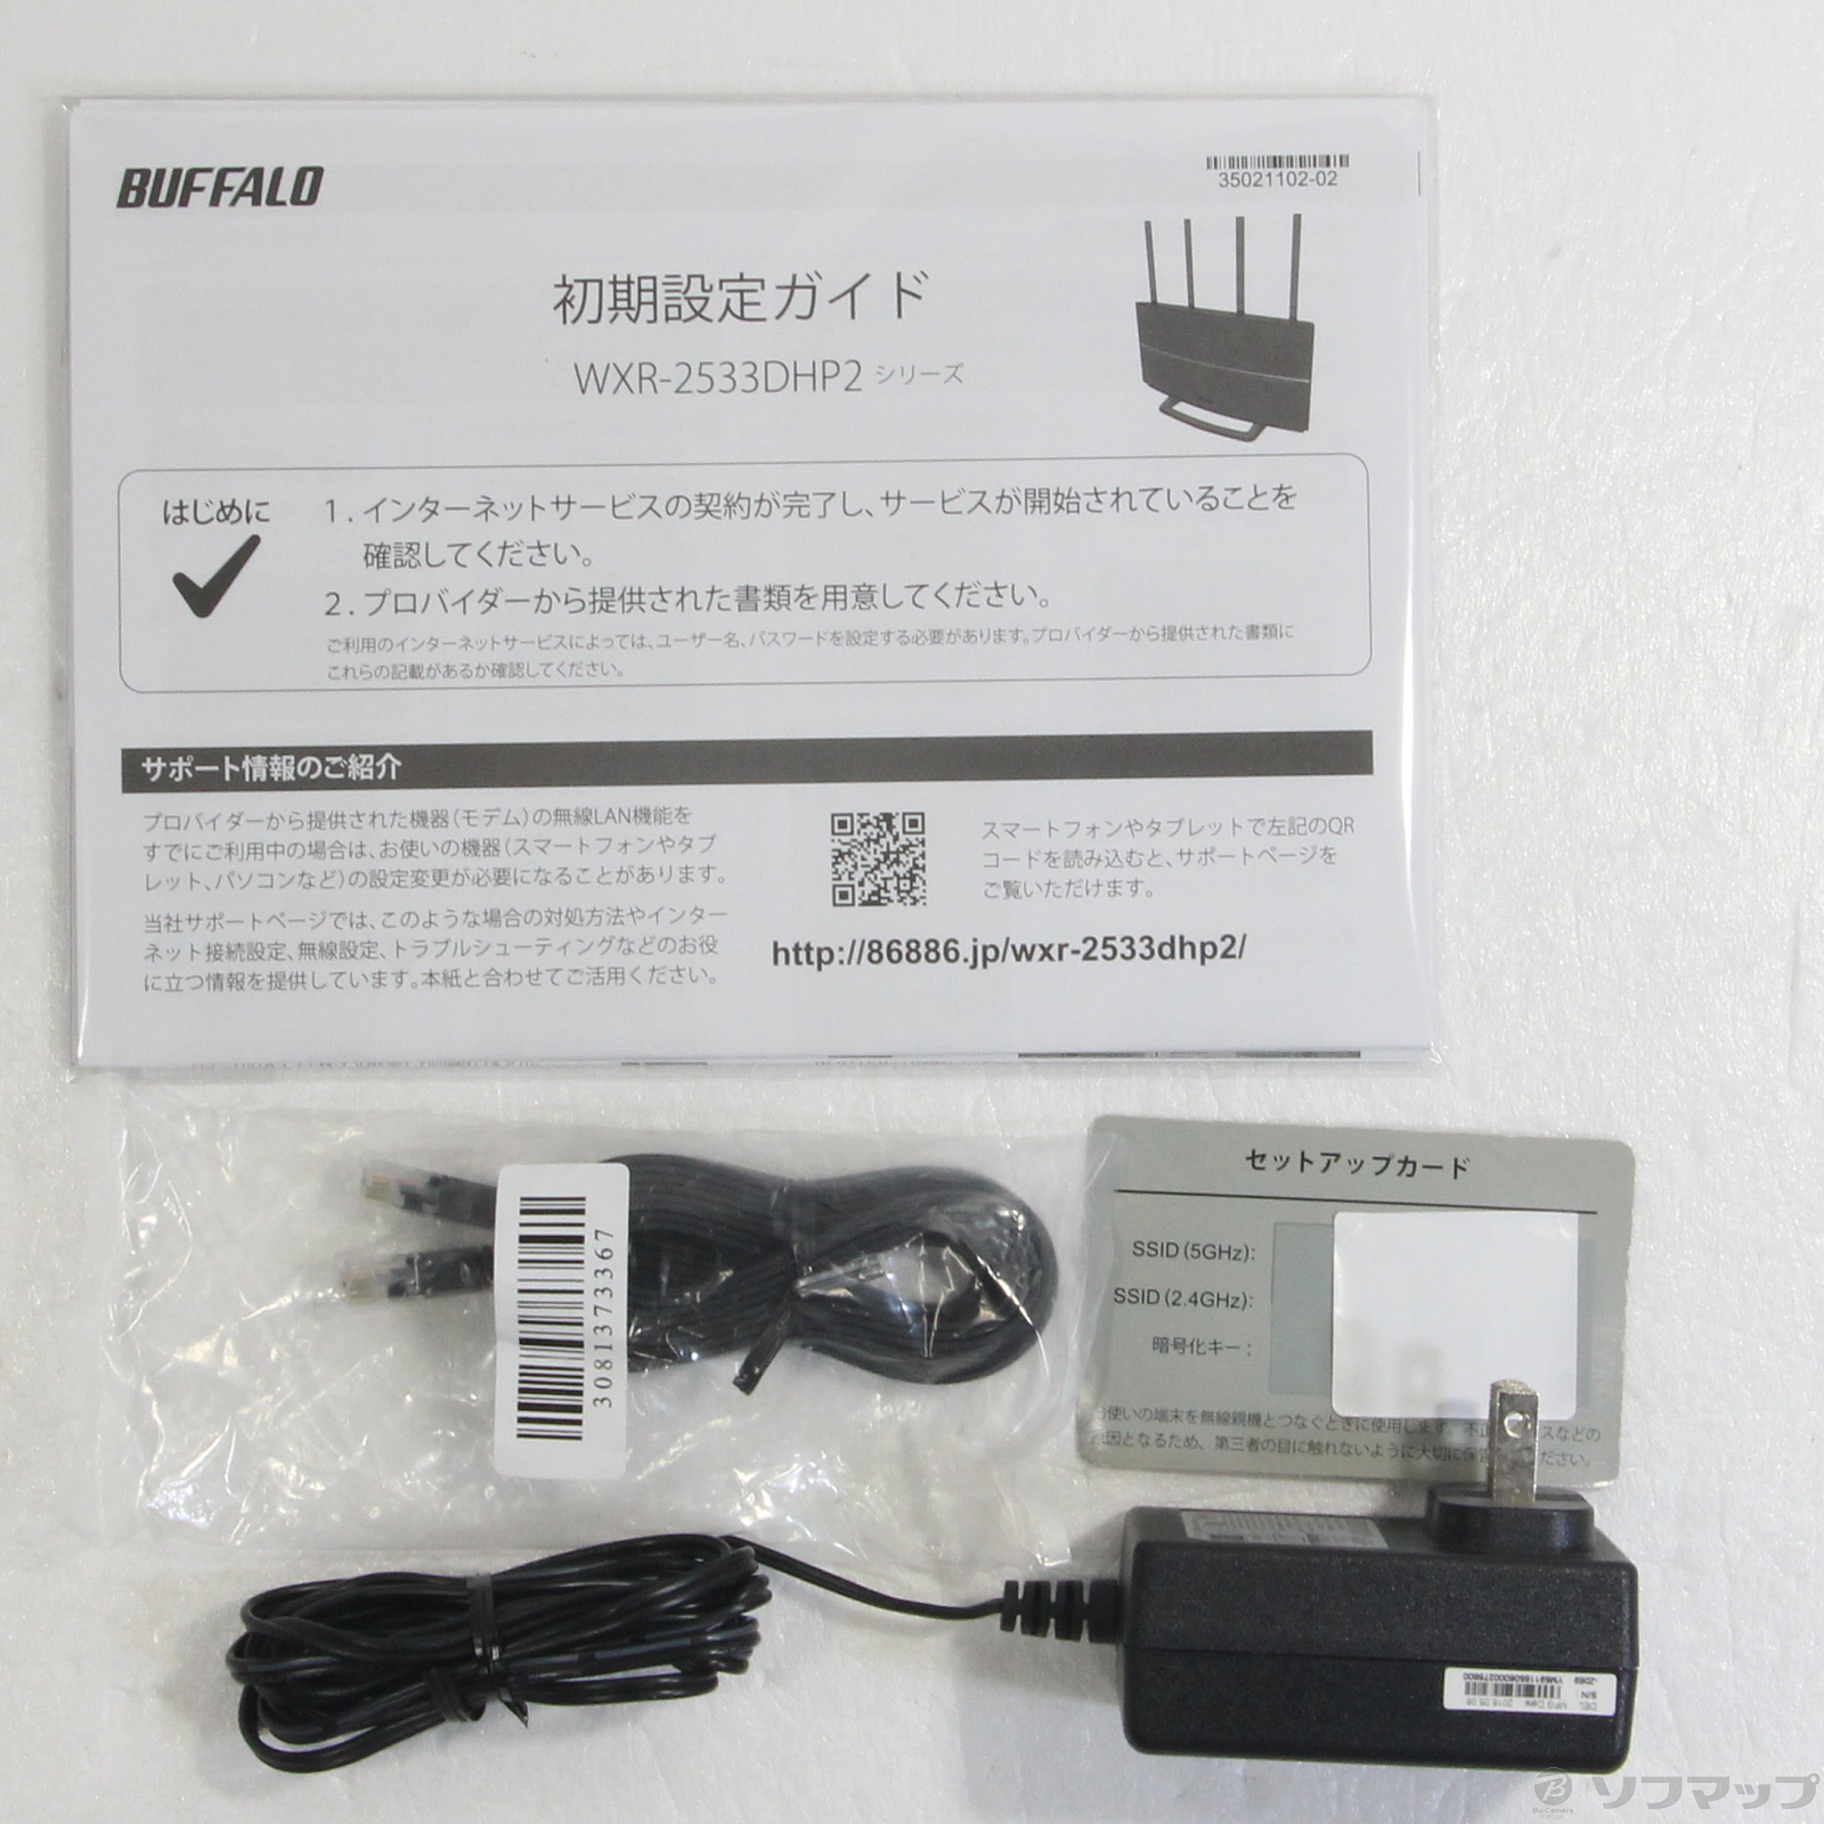 ネット直販店 大幅値下げ BUFFALO WXR-2533DHP2 - PC/タブレット